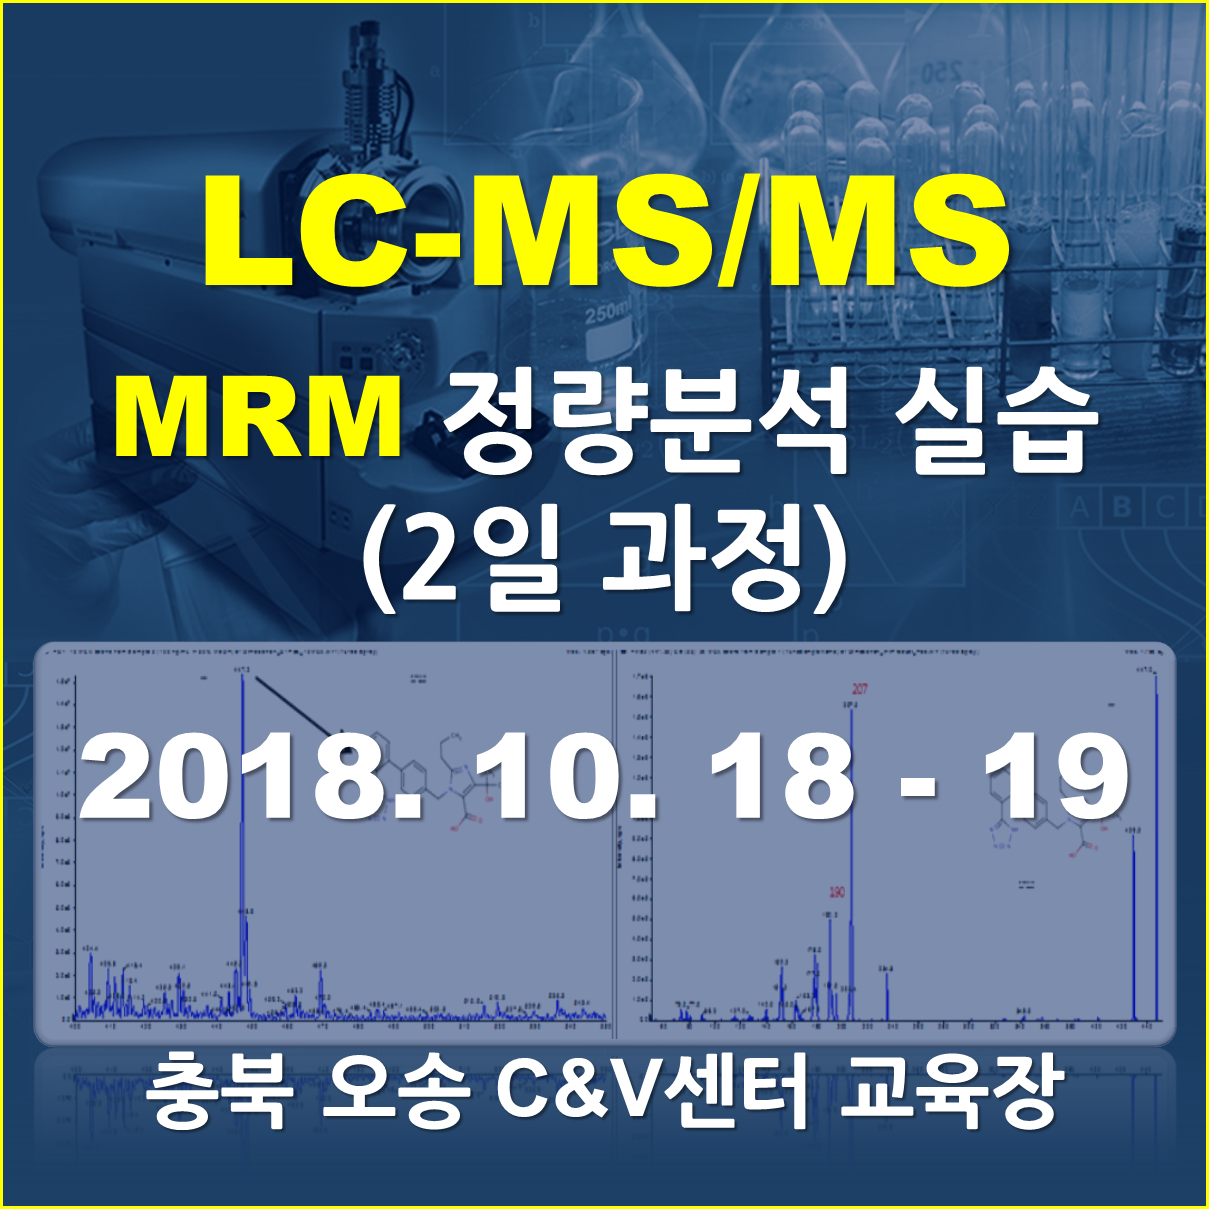 [오송 교육장] LC-MS/MS를 이용한 MRM 정량분석실습 (2일 과정)